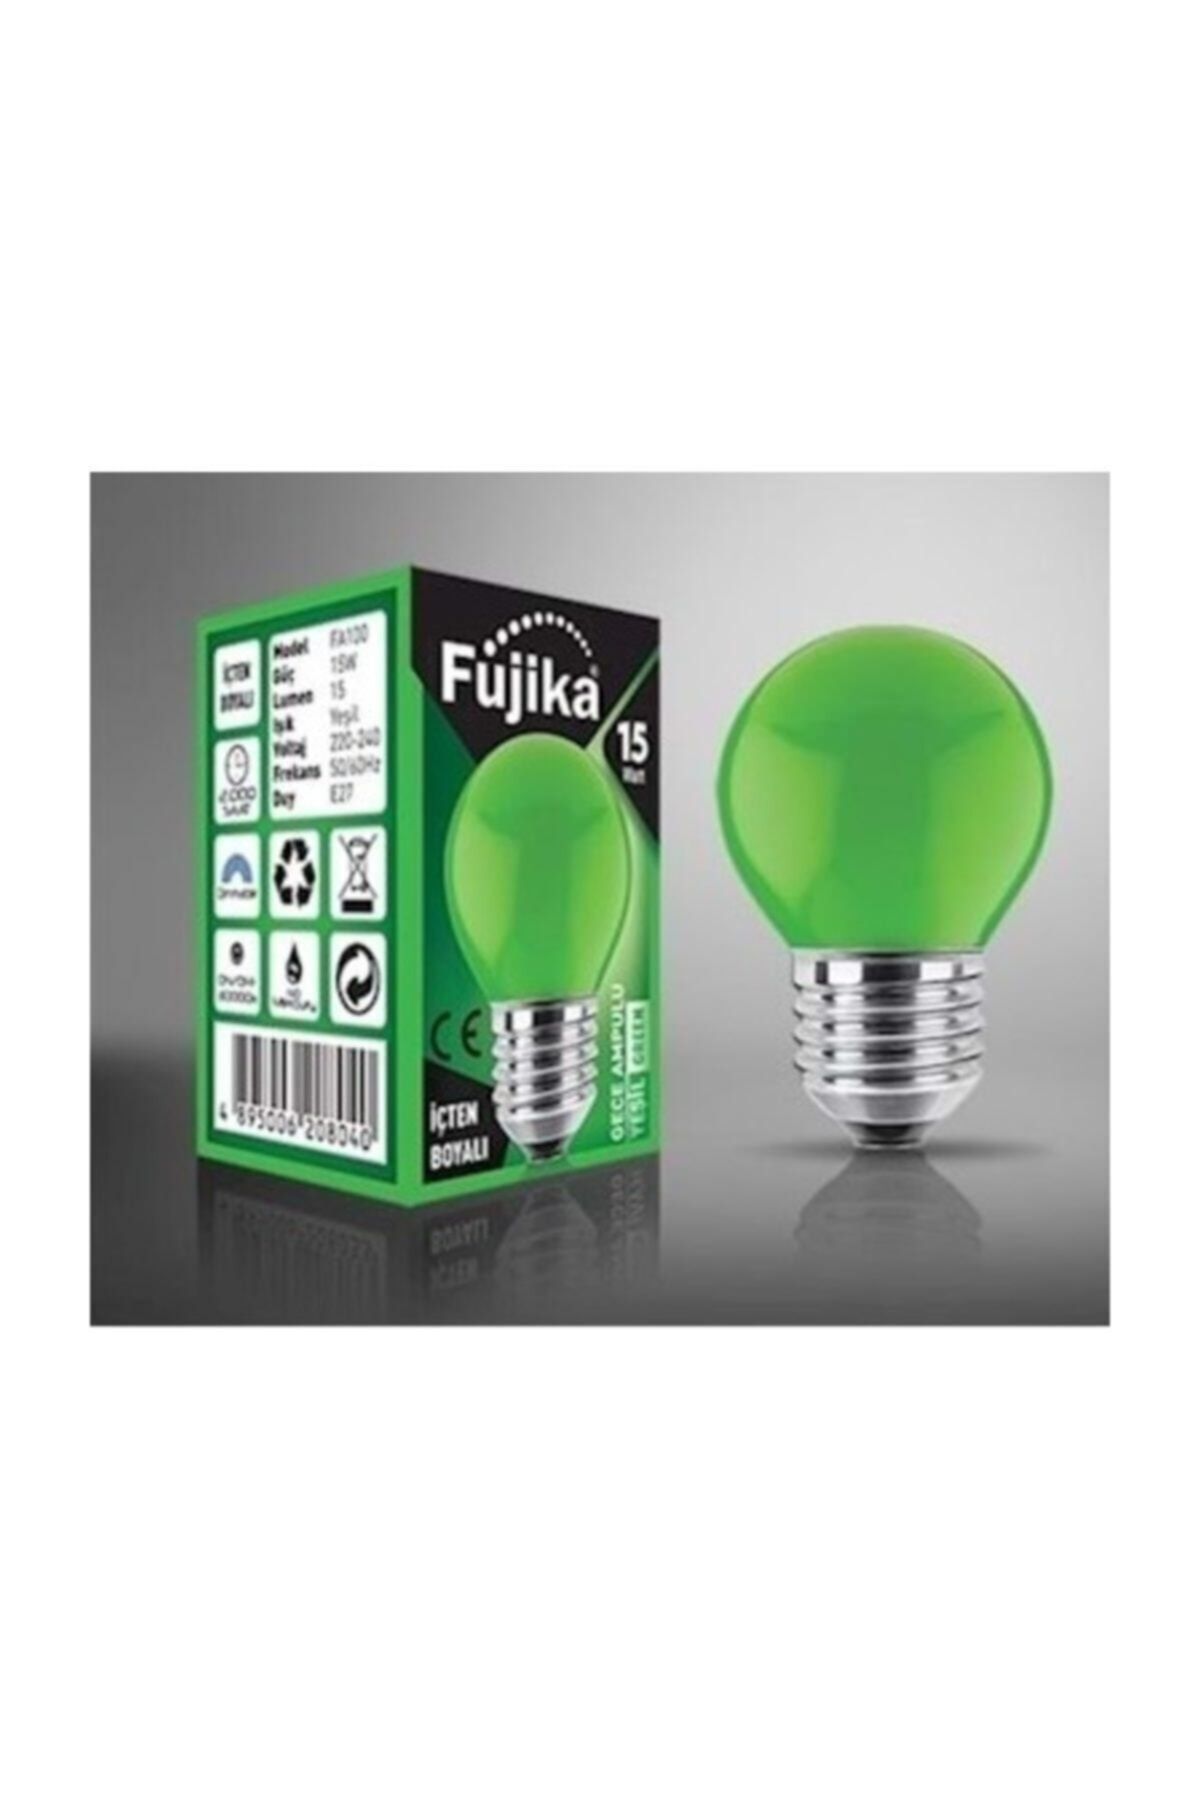 Fujika 15 Watt Renkli Gece Lambası Ampulü Yeşil Renk